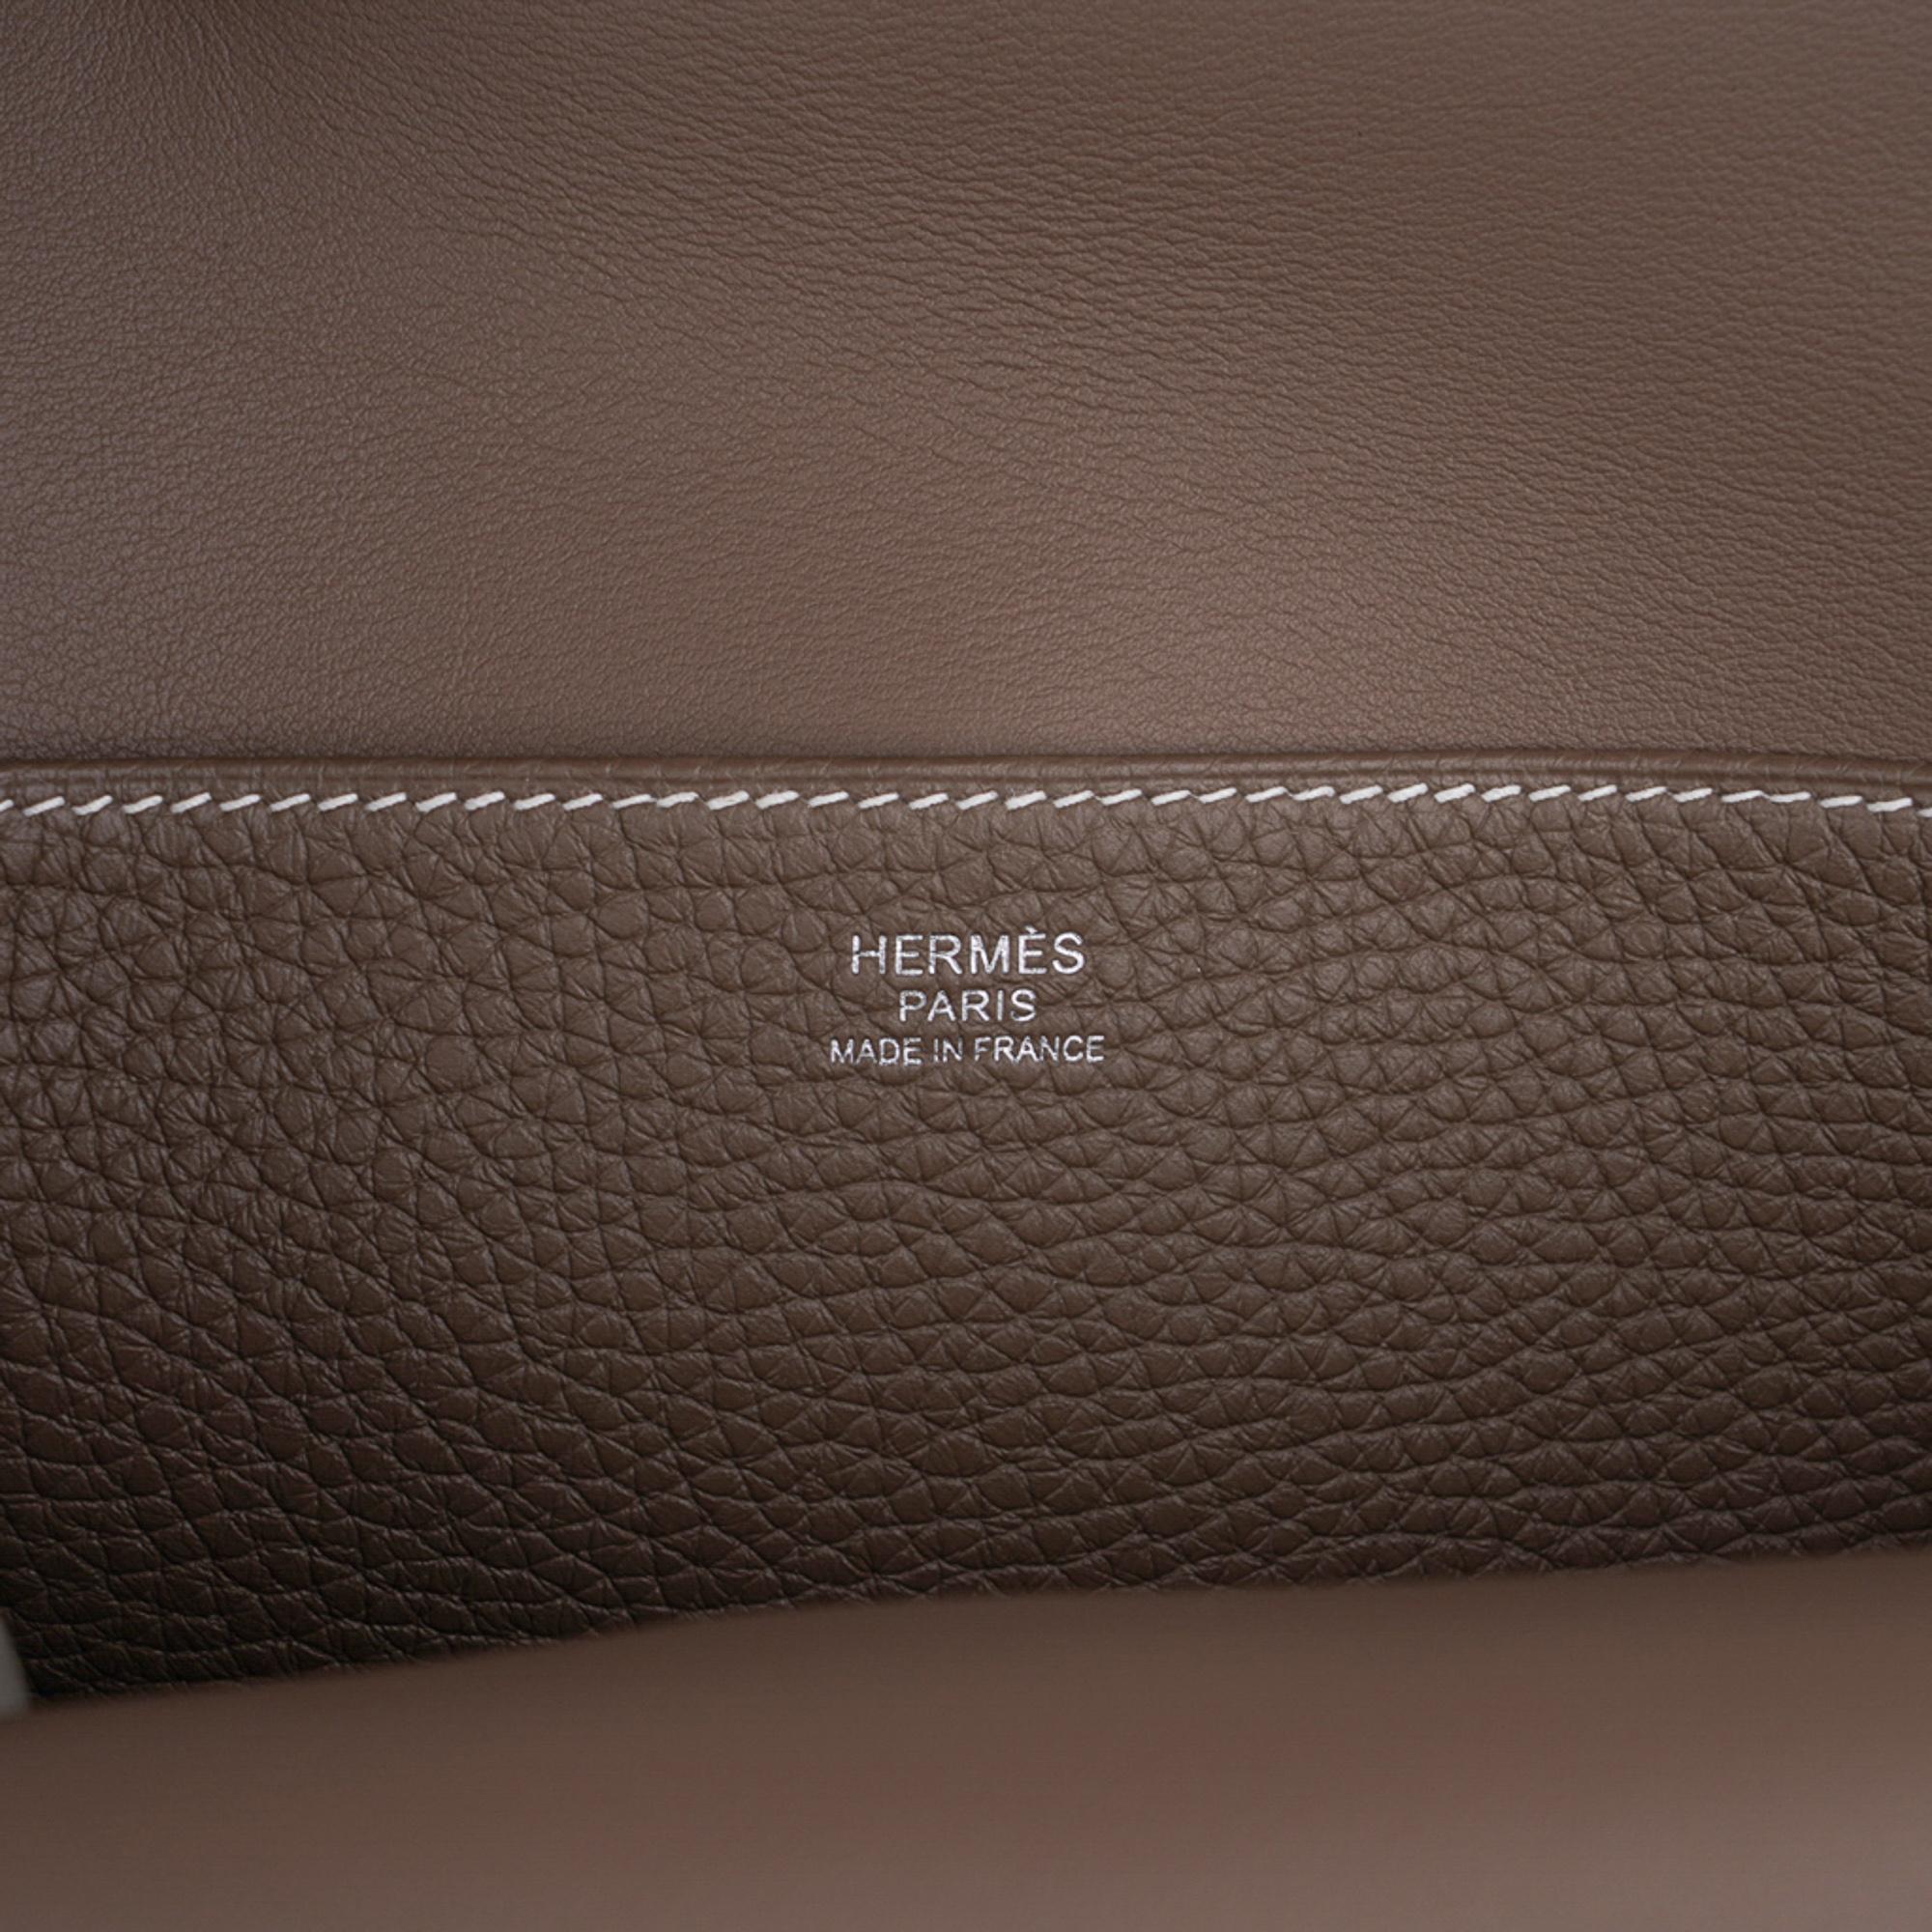 Hermes Halzan 25 Bag Etoupe Palladium Hardware Clemence Leather New w/Box 2